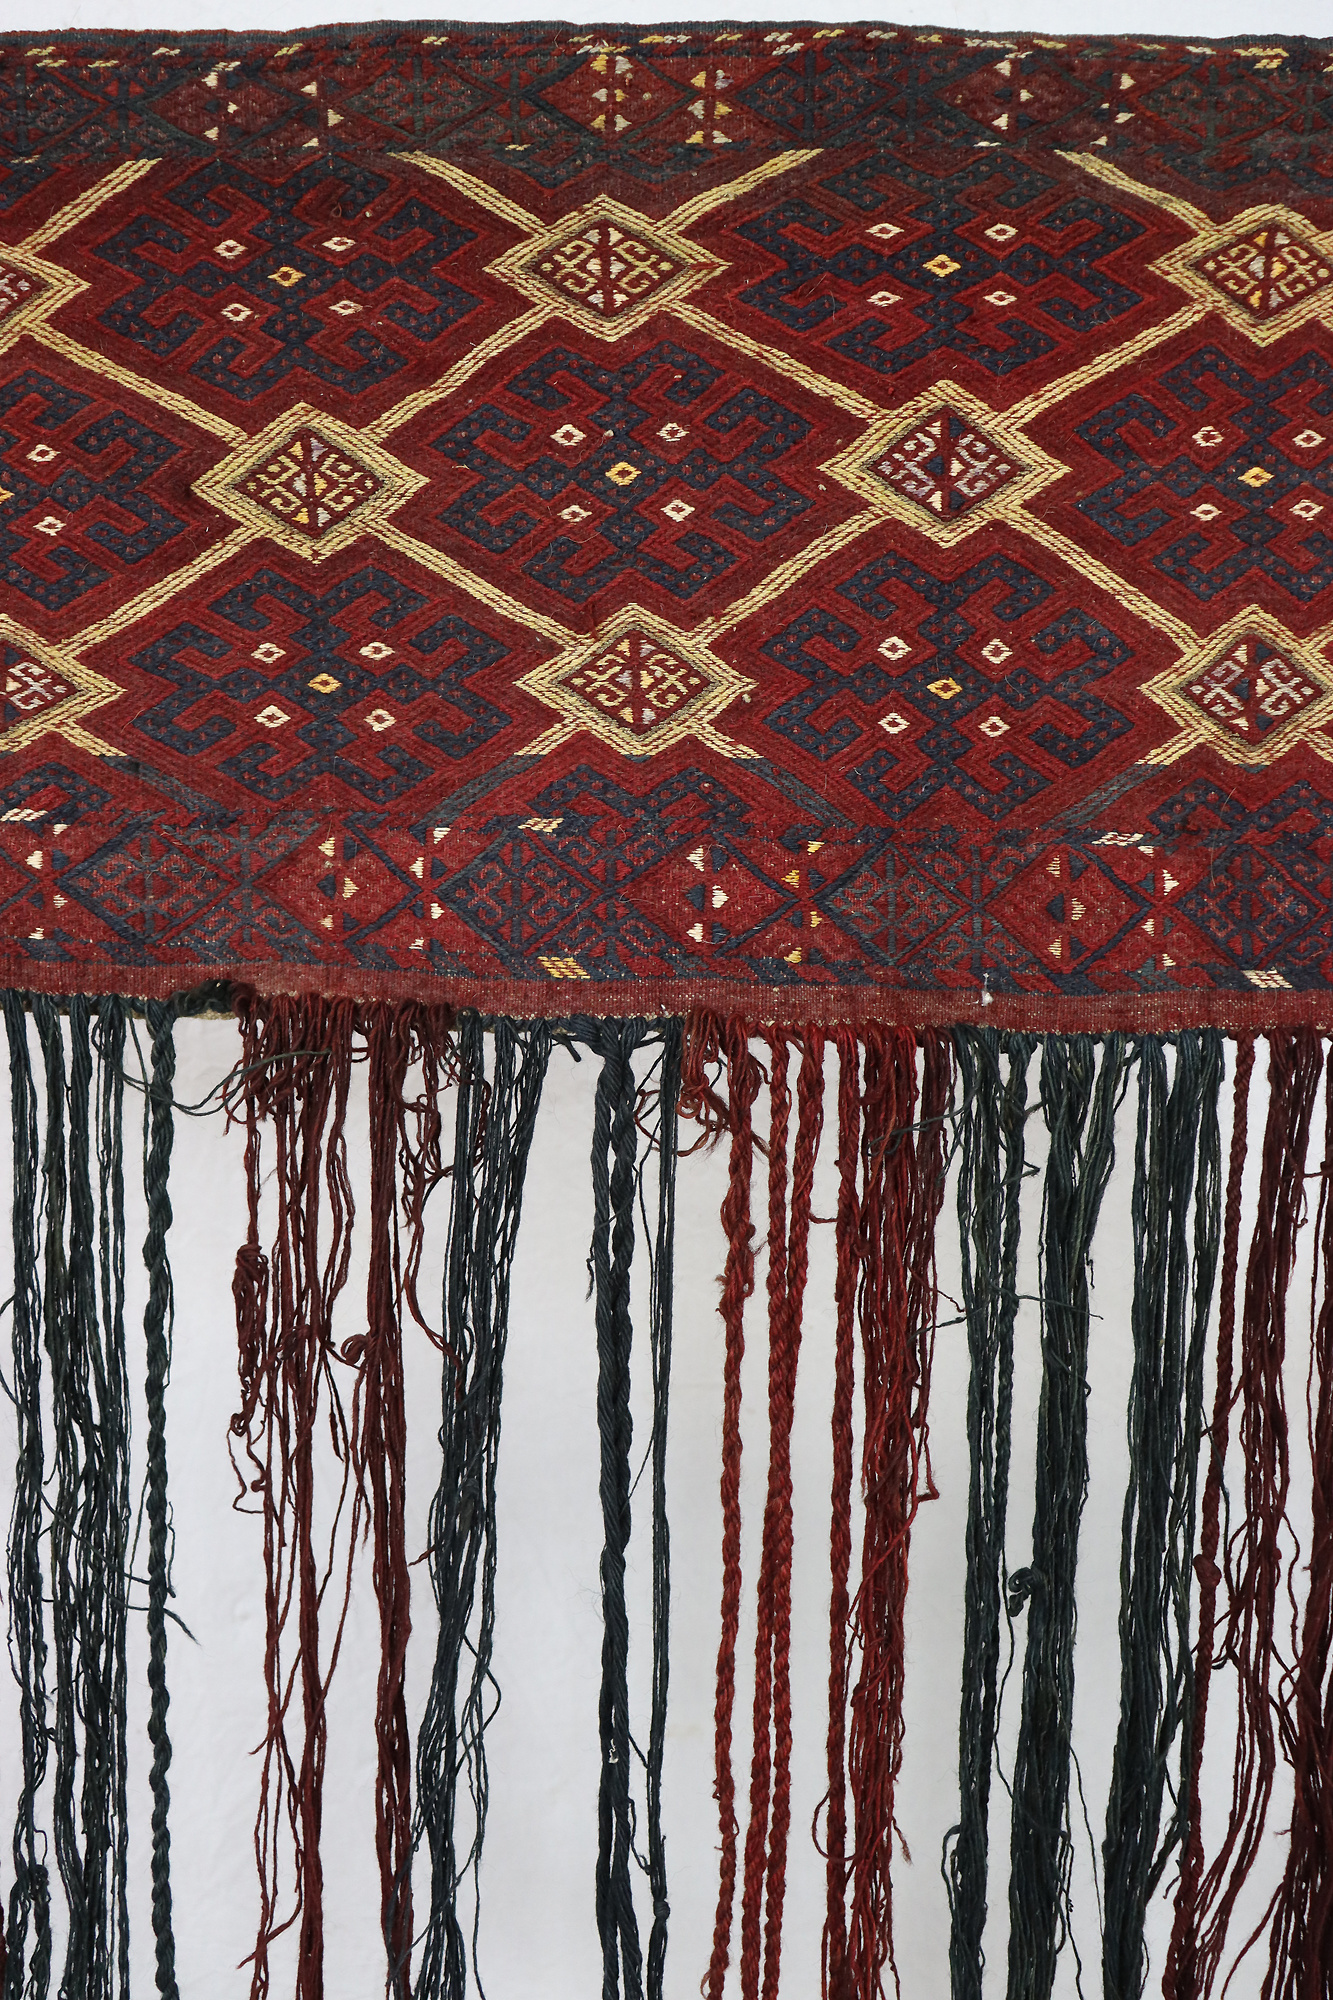 120x115 cm Antik und seltener Uzbek Nomaden Zelttasche tasche Torba aus Afghanistan Djaller Turkmenistan  Nr:22/eb3